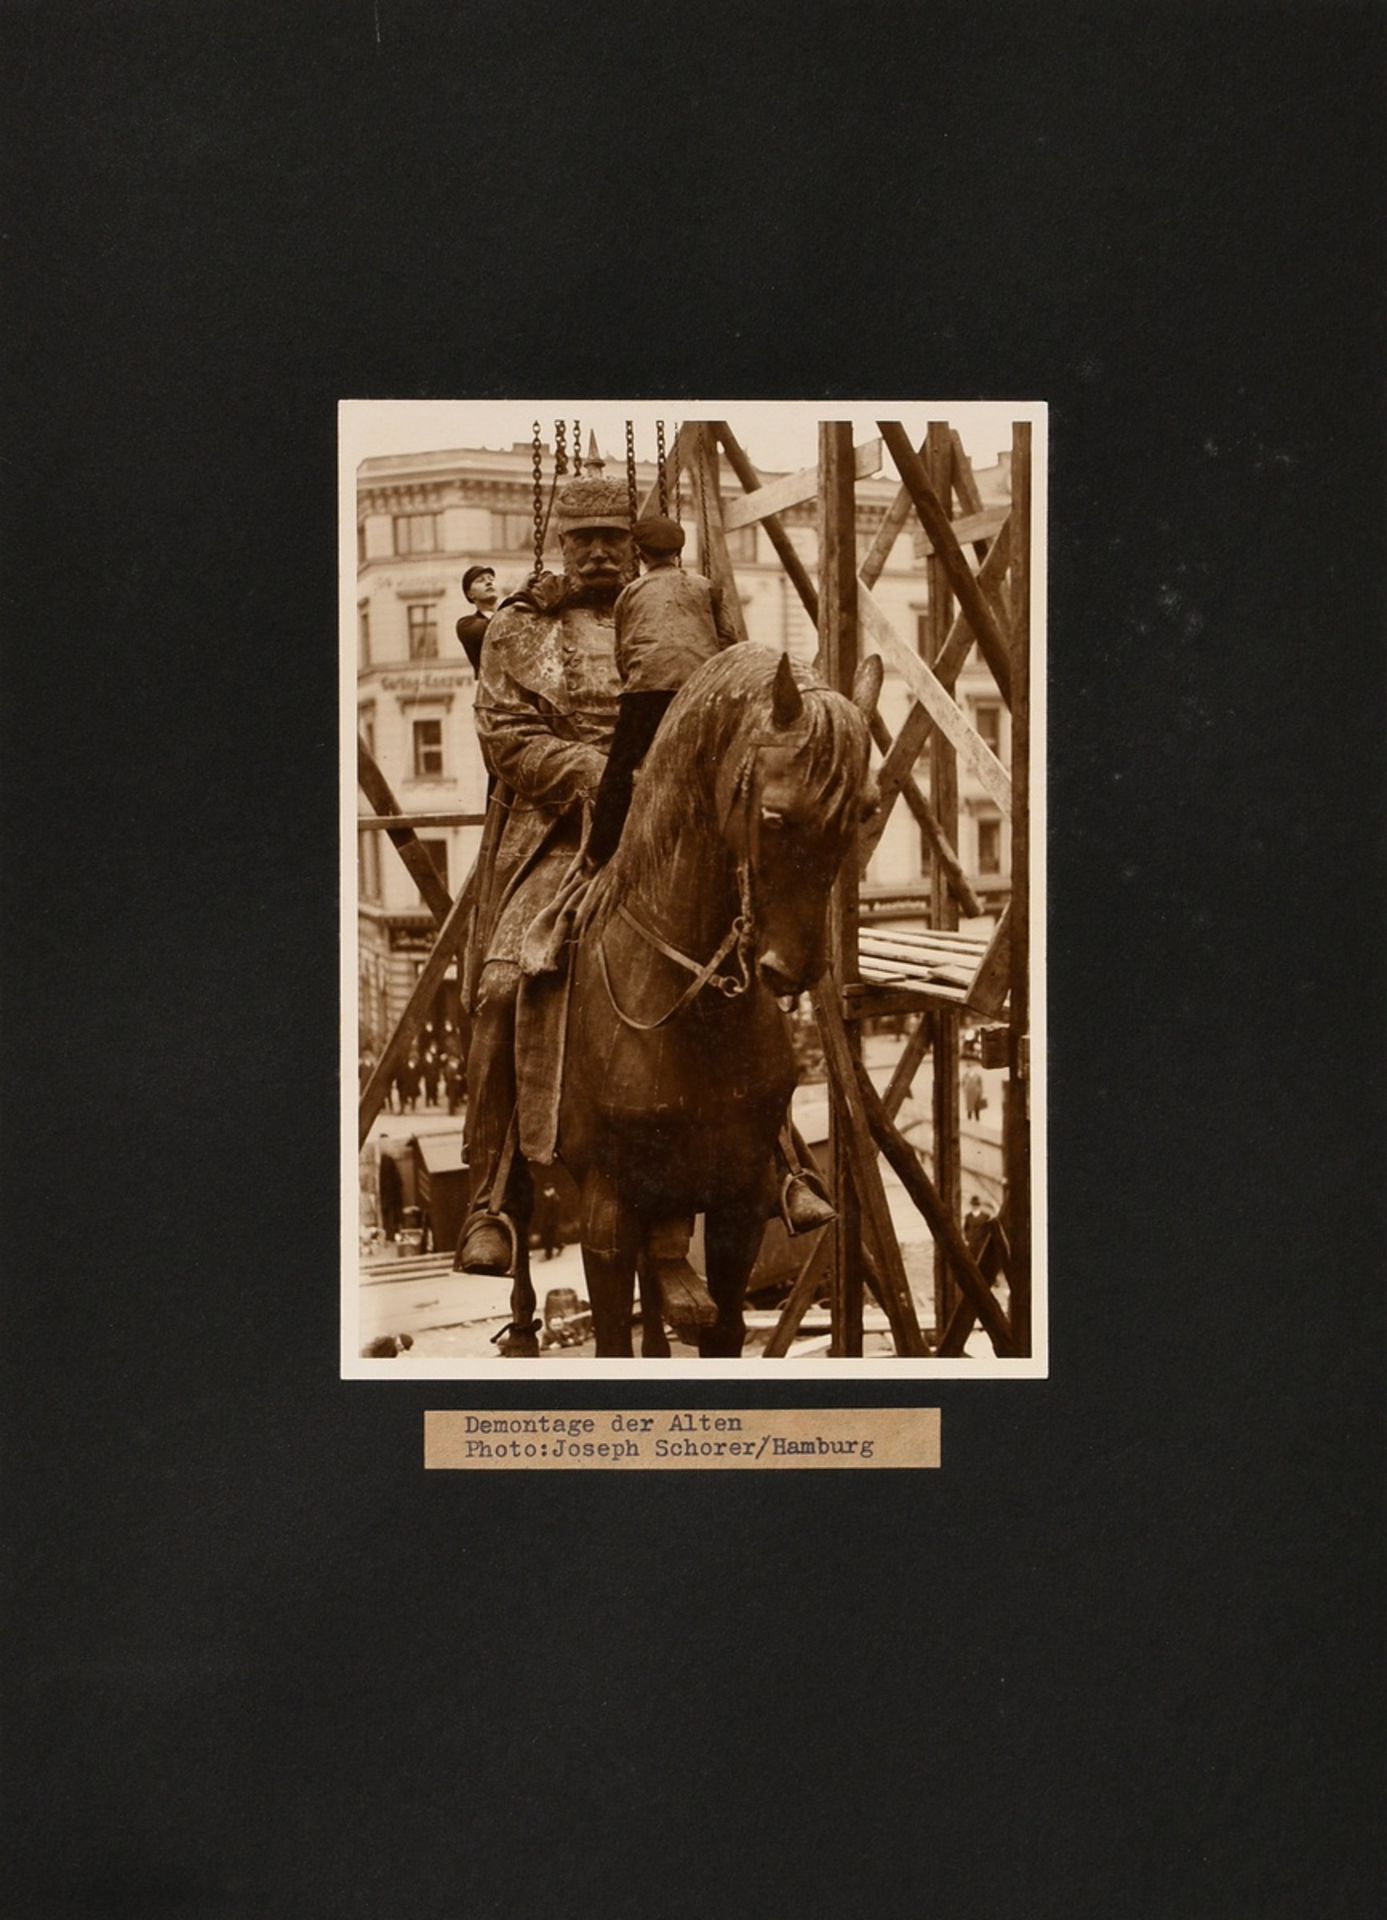 Schorer, Joseph (1894-1946) "Demontage der Alten", Fotografie, auf Karton montiert, u. bez., verso  - Bild 2 aus 5